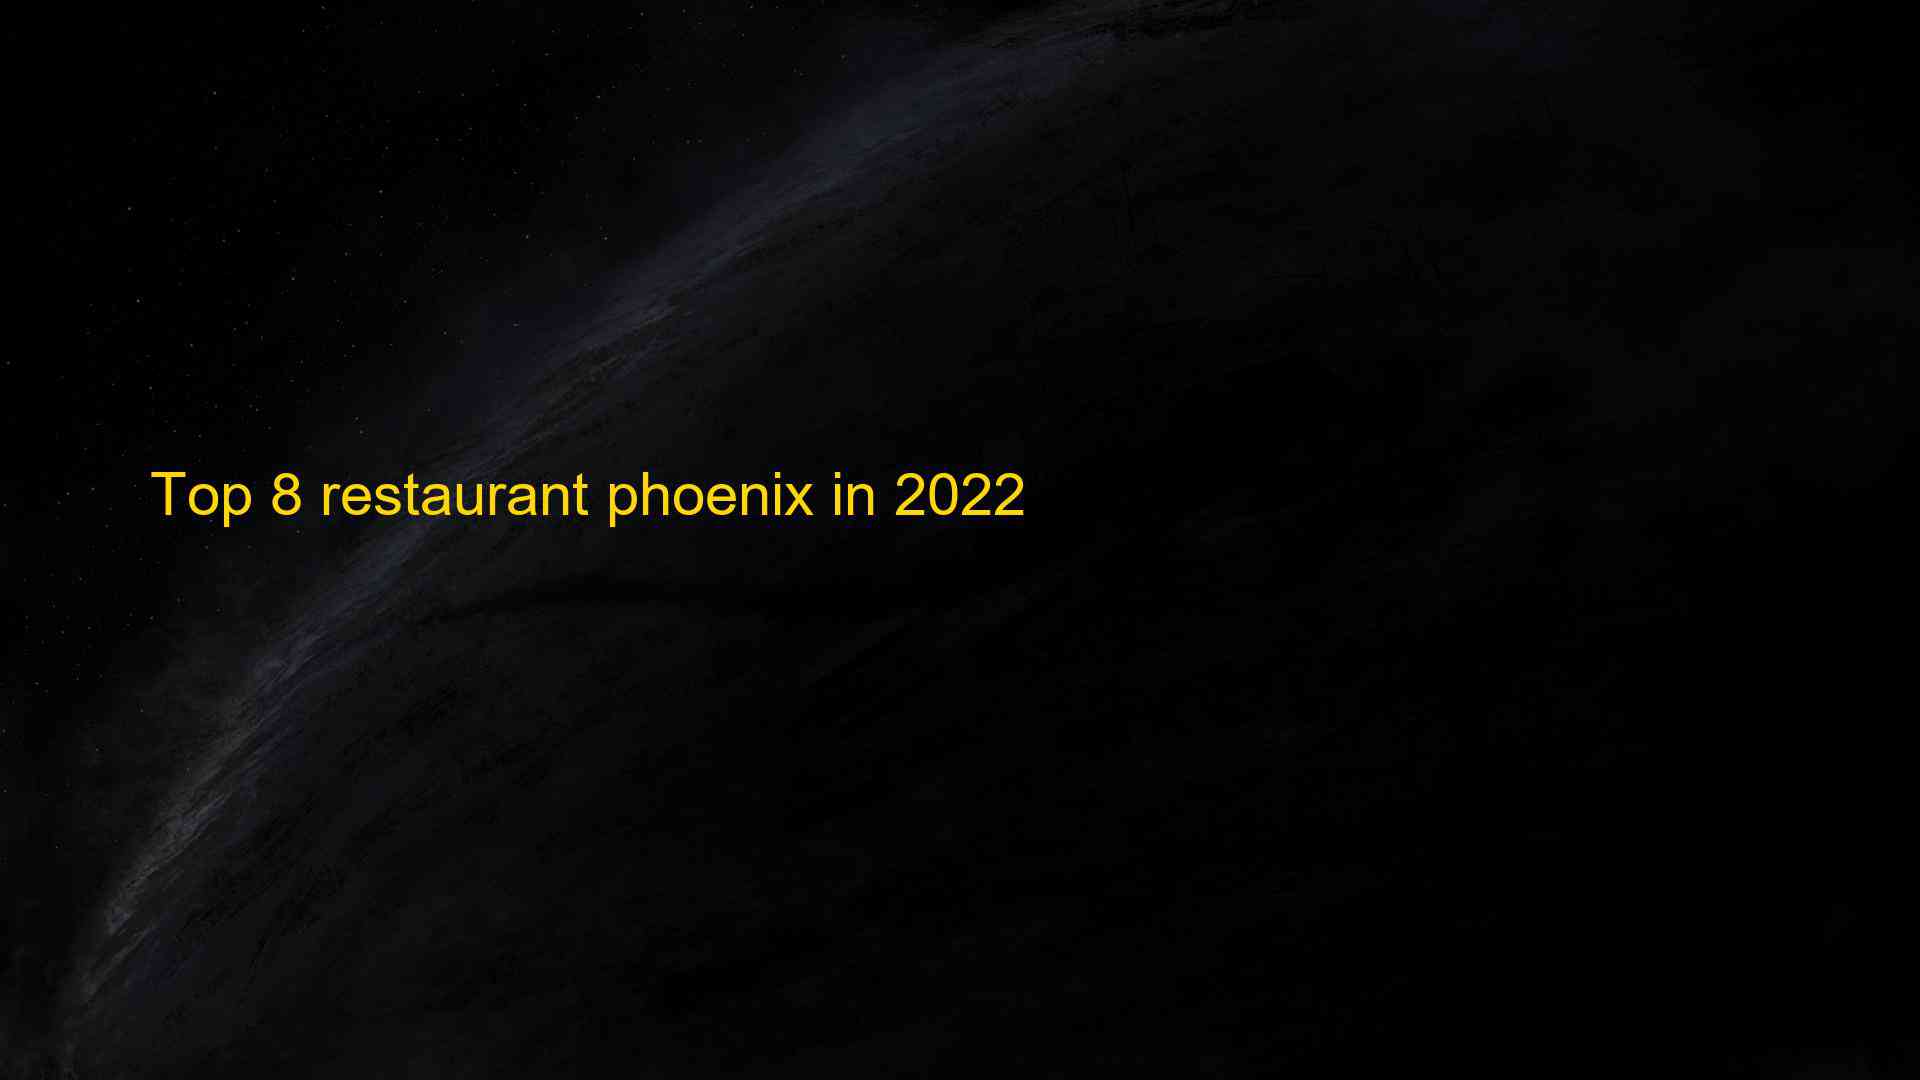 Top 8 restaurant phoenix in 2022 1663537631